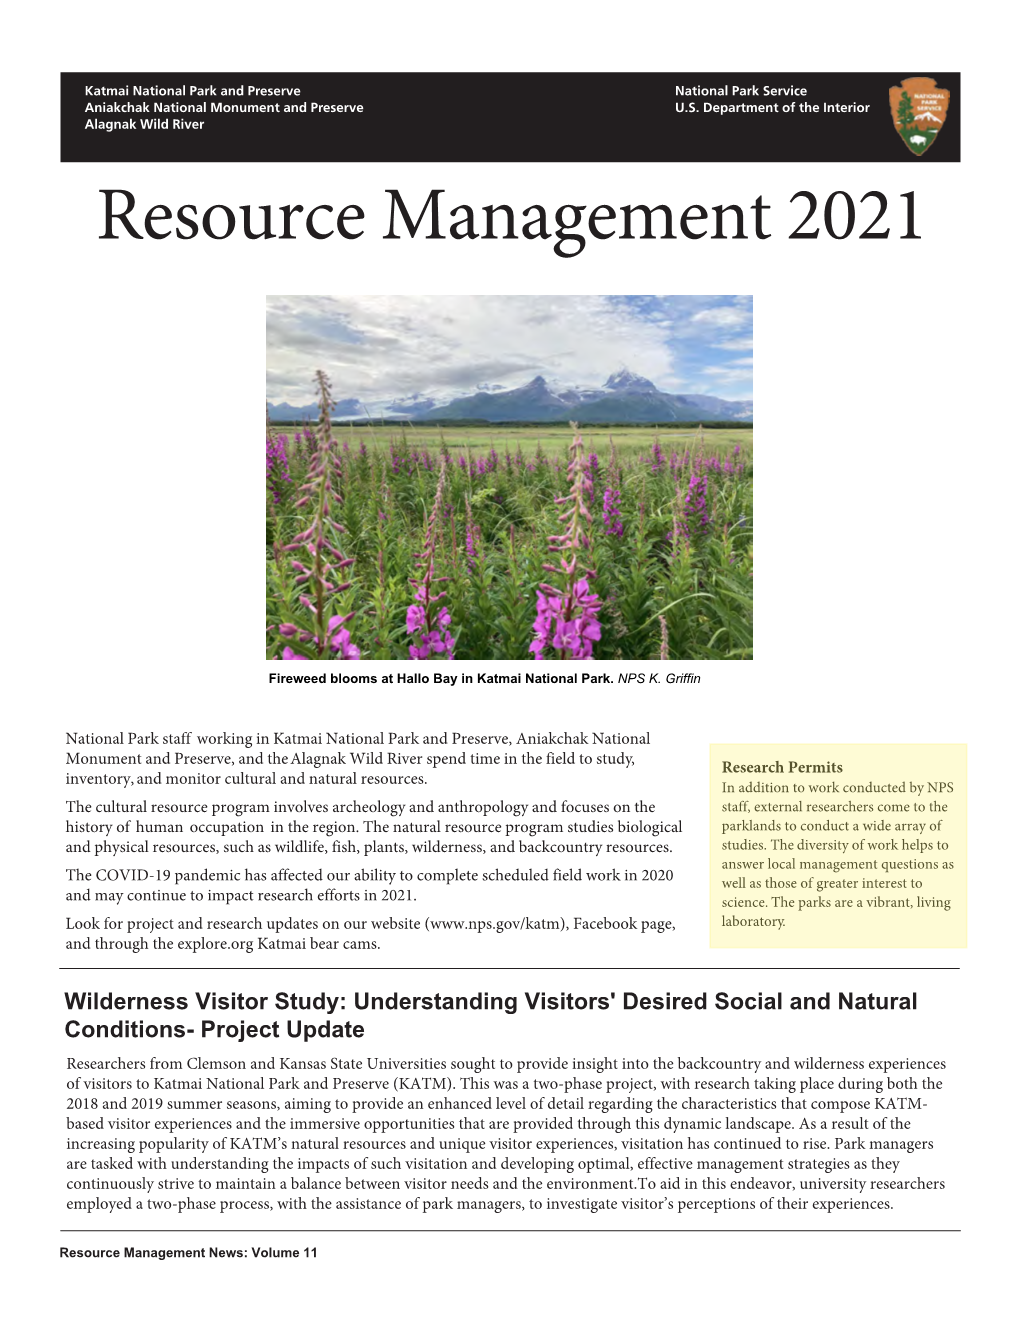 2021 Resource Management Newsletter